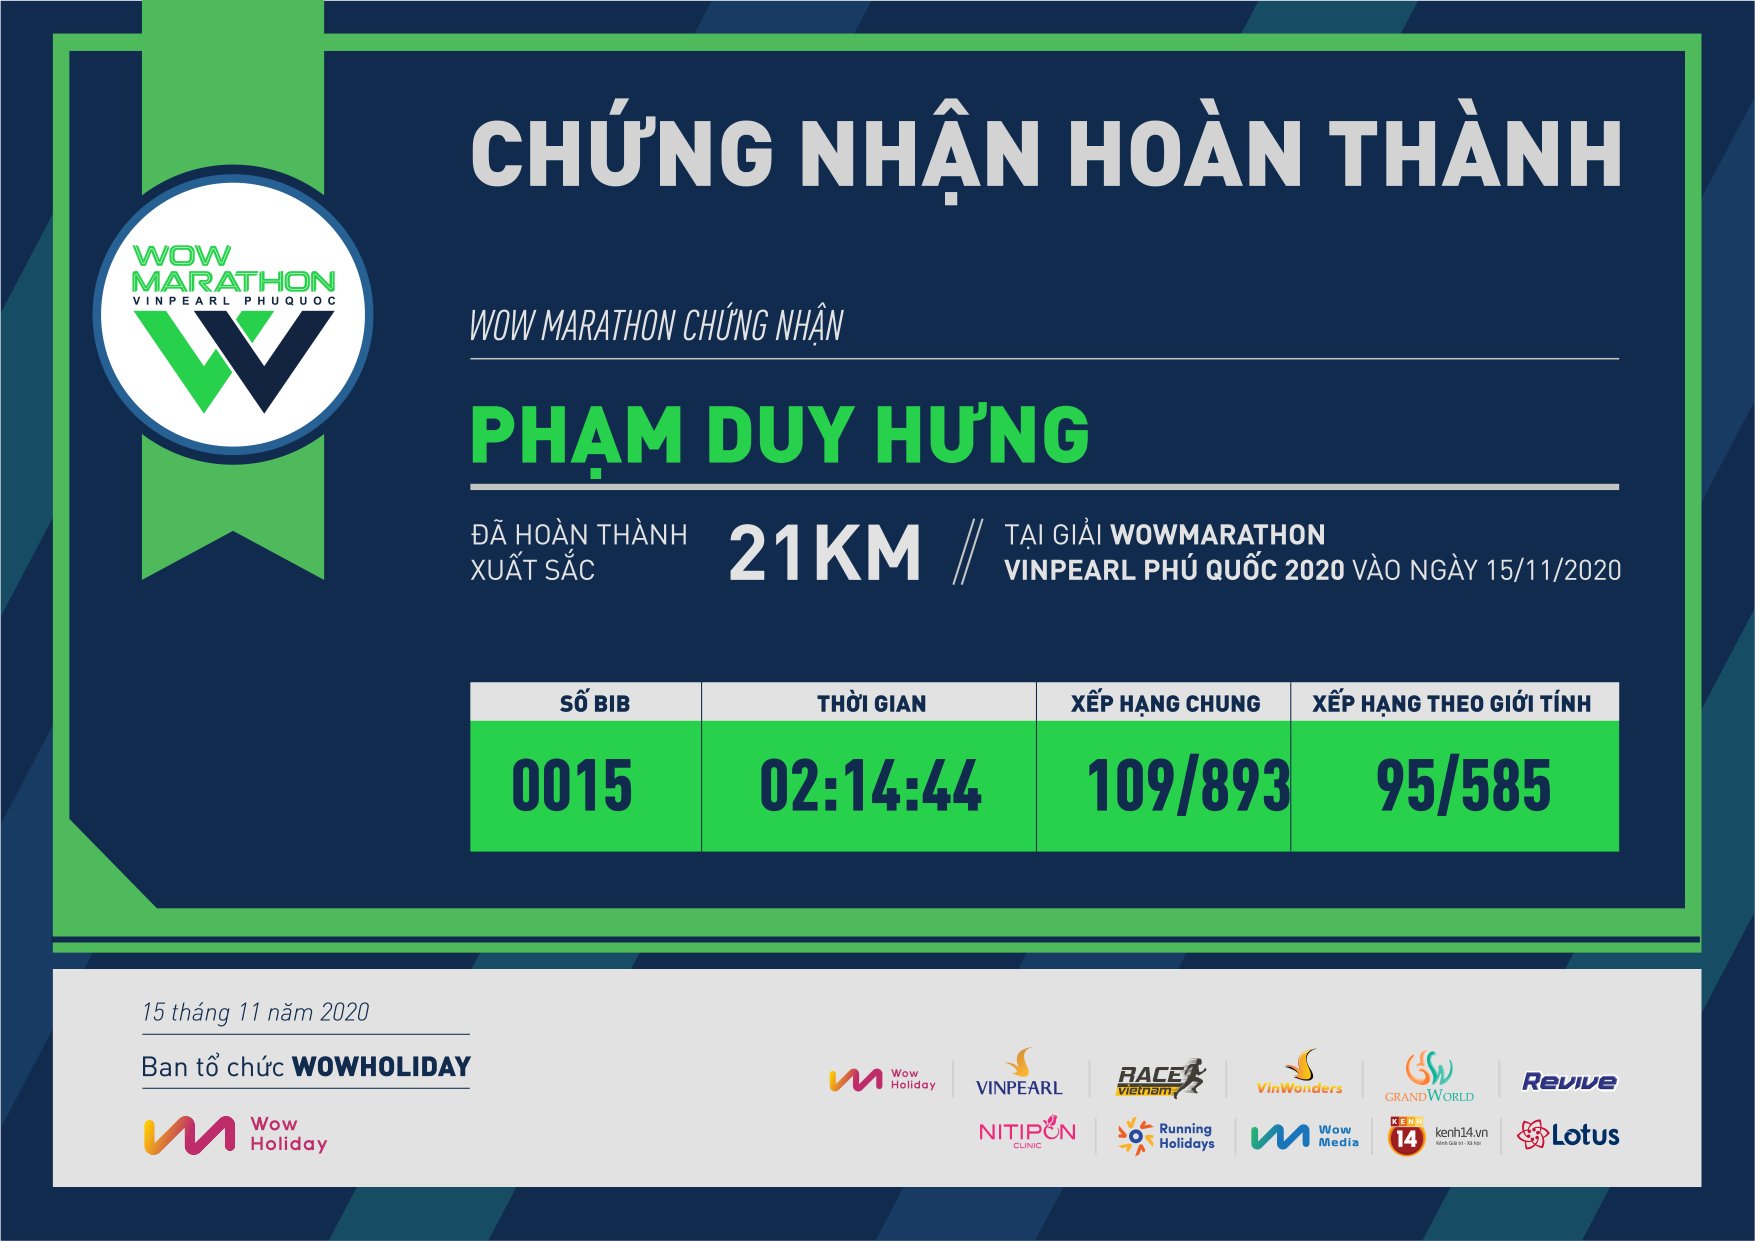 0015 - Phạm Duy Hưng